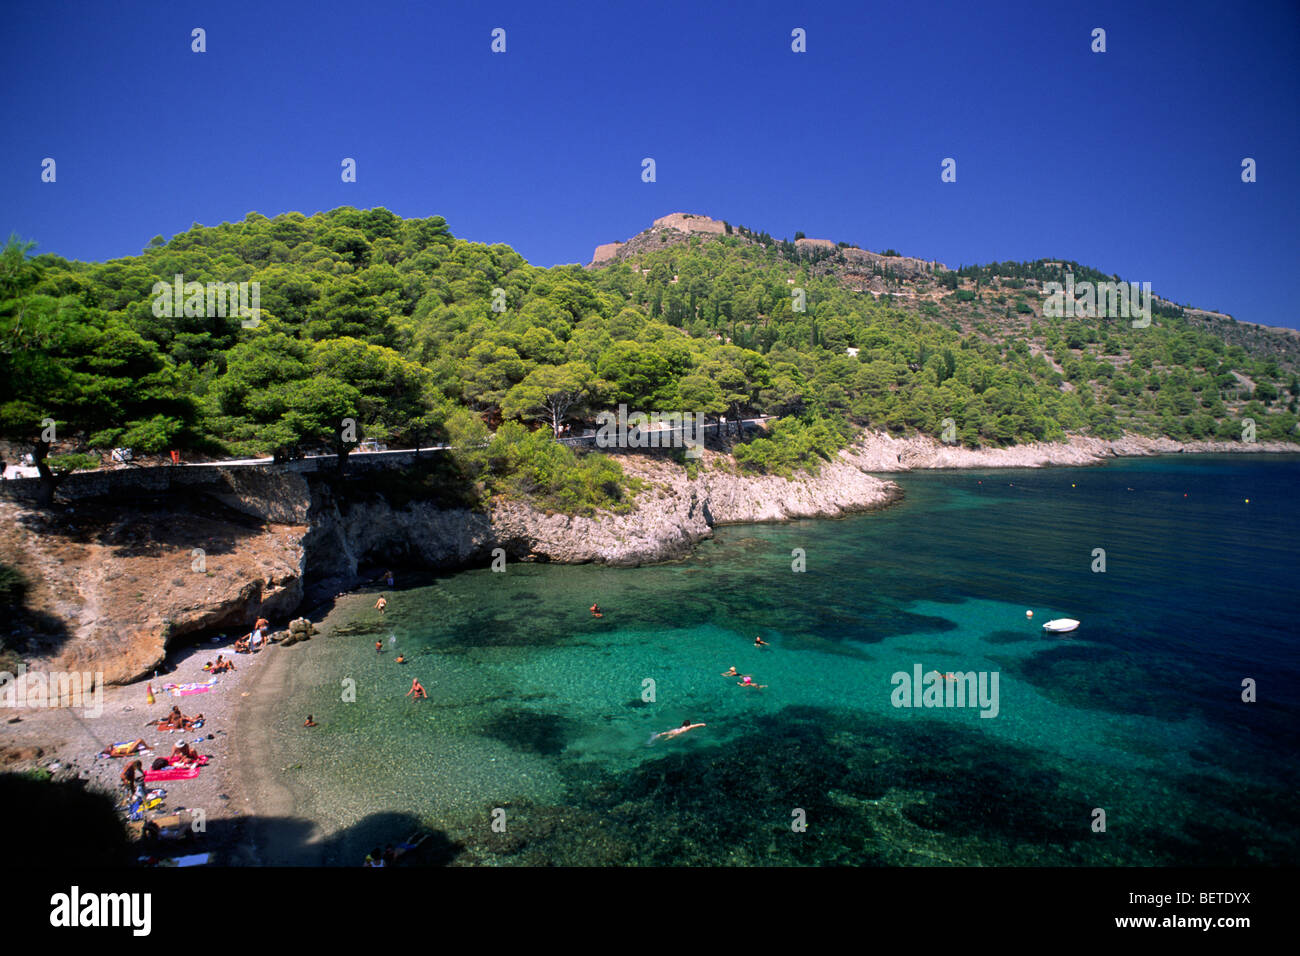 En Grecia, las islas jónicas, Kefalonia, assos Foto de stock